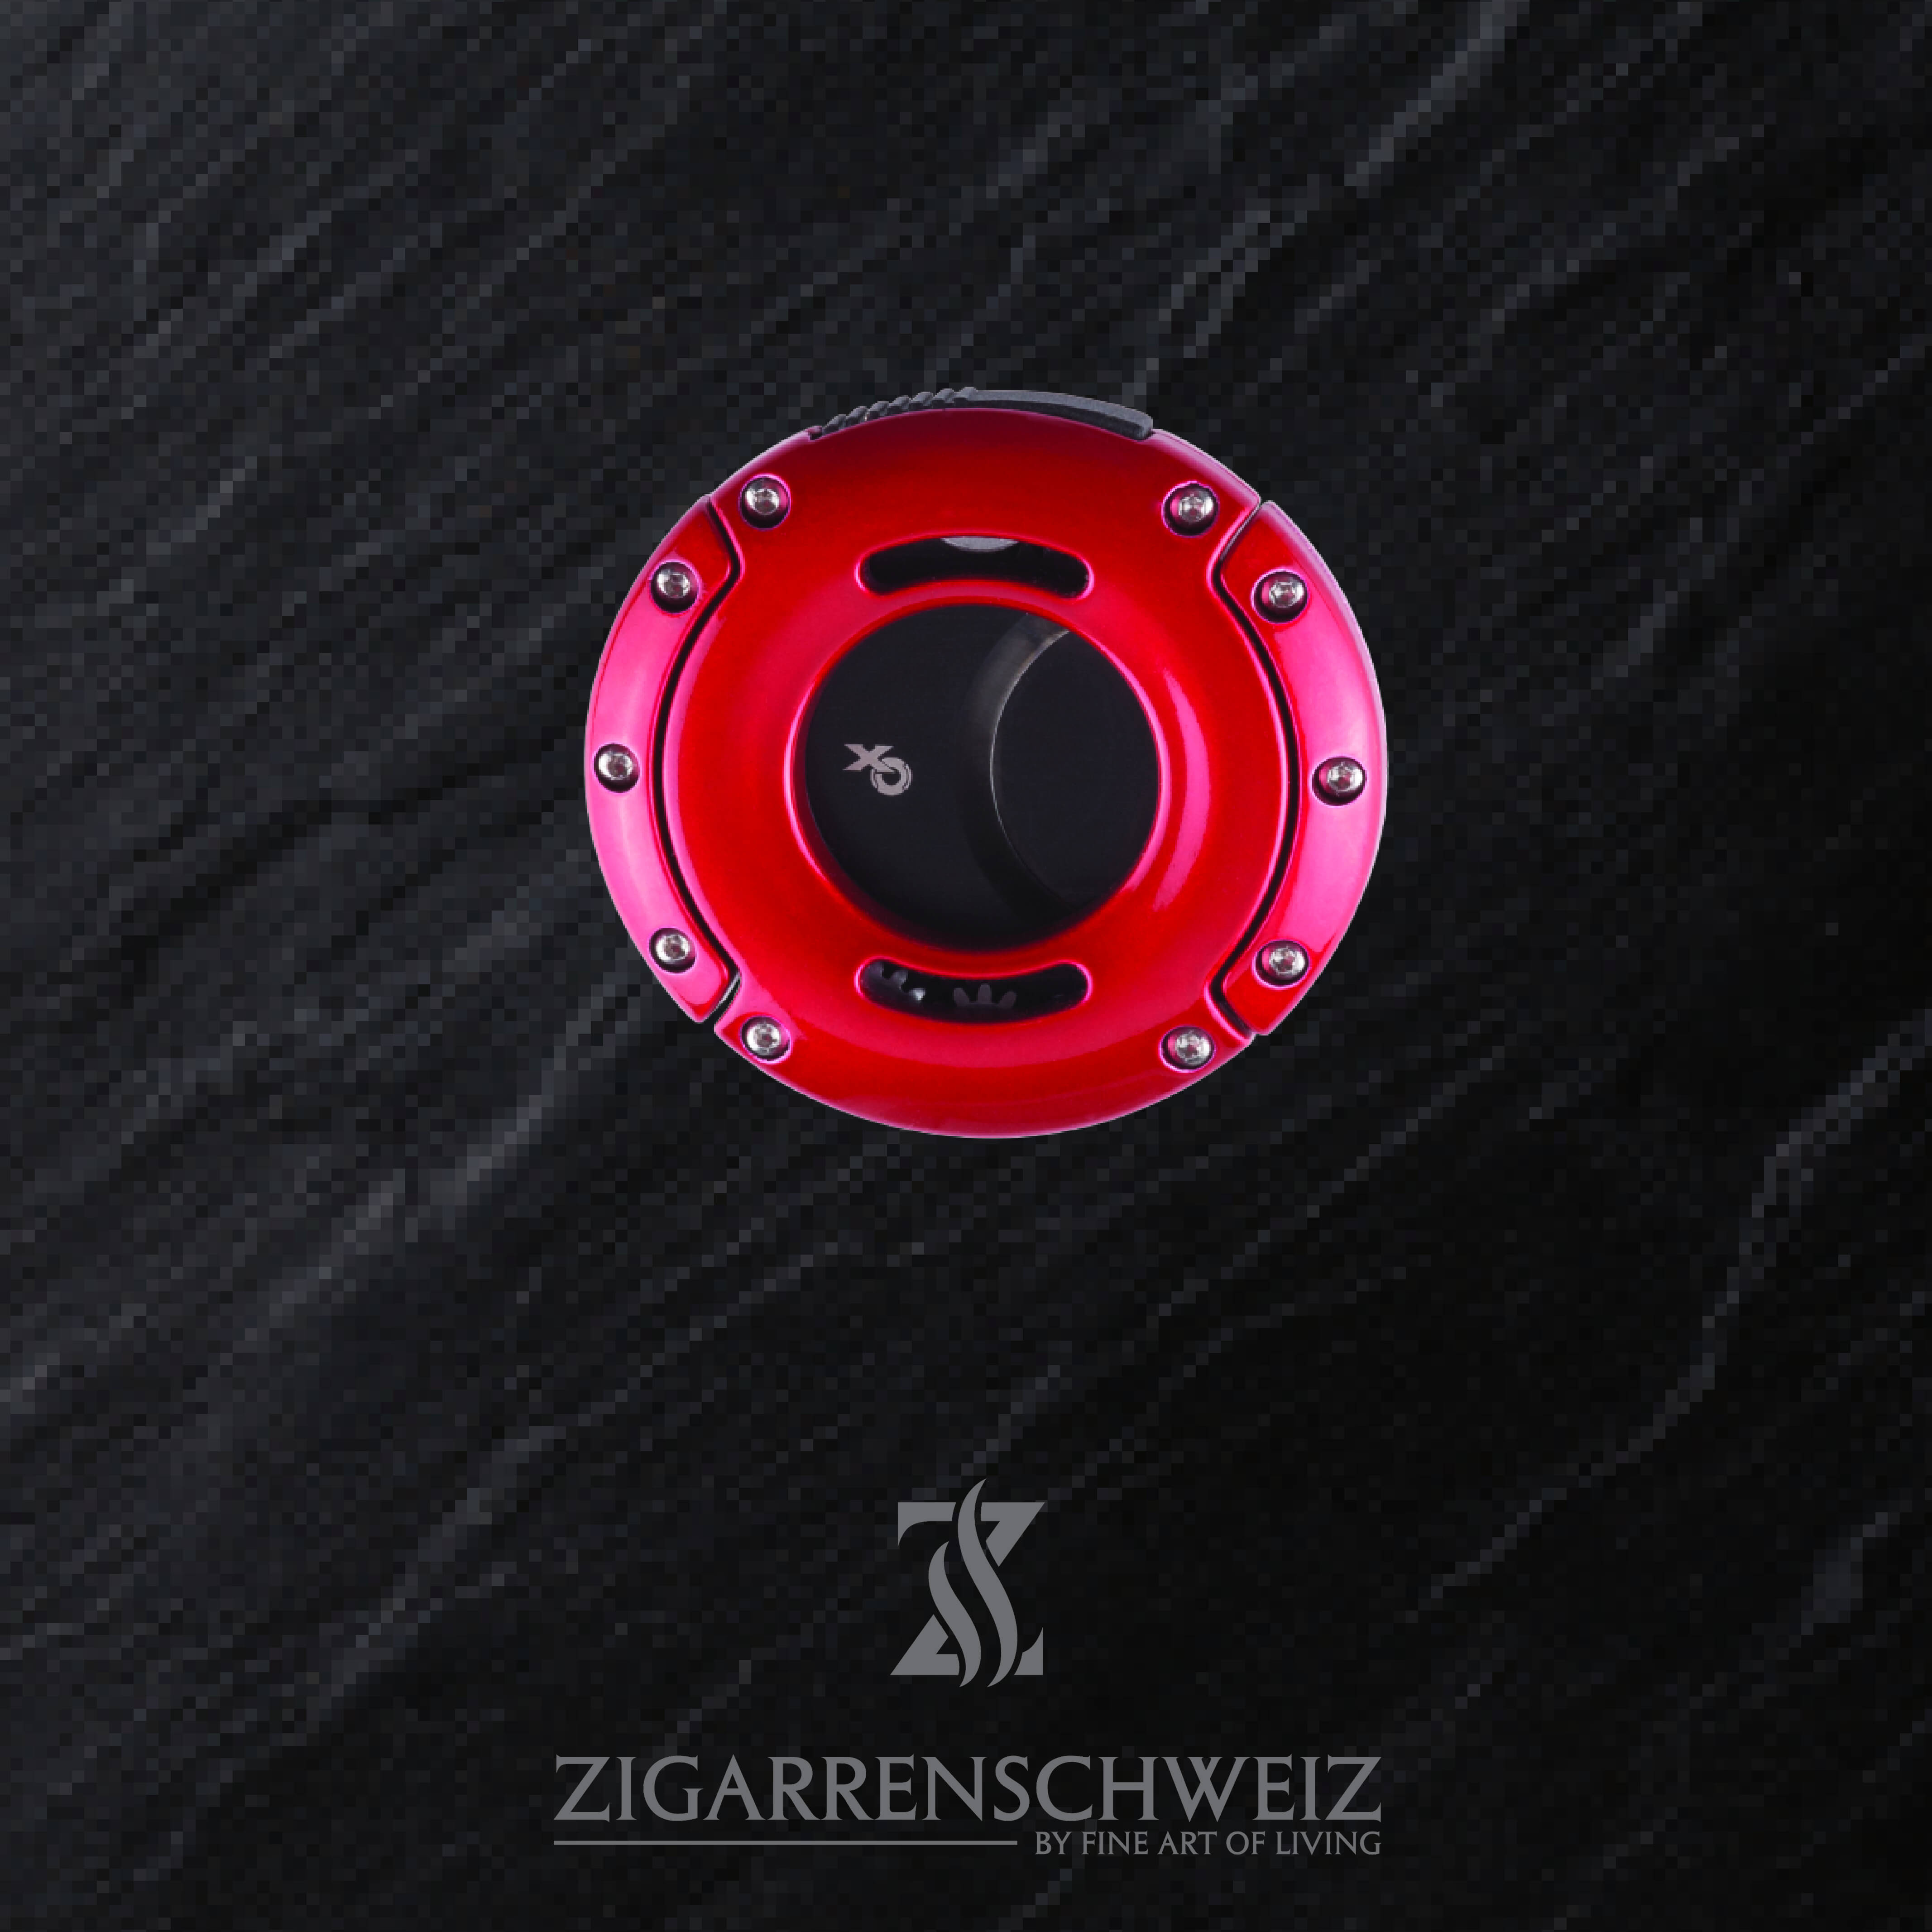 Xikar XO Zigarren Cutter, Farbe Gehäuse: Rot, Farbe Klingen: Schwarz, geschlossen